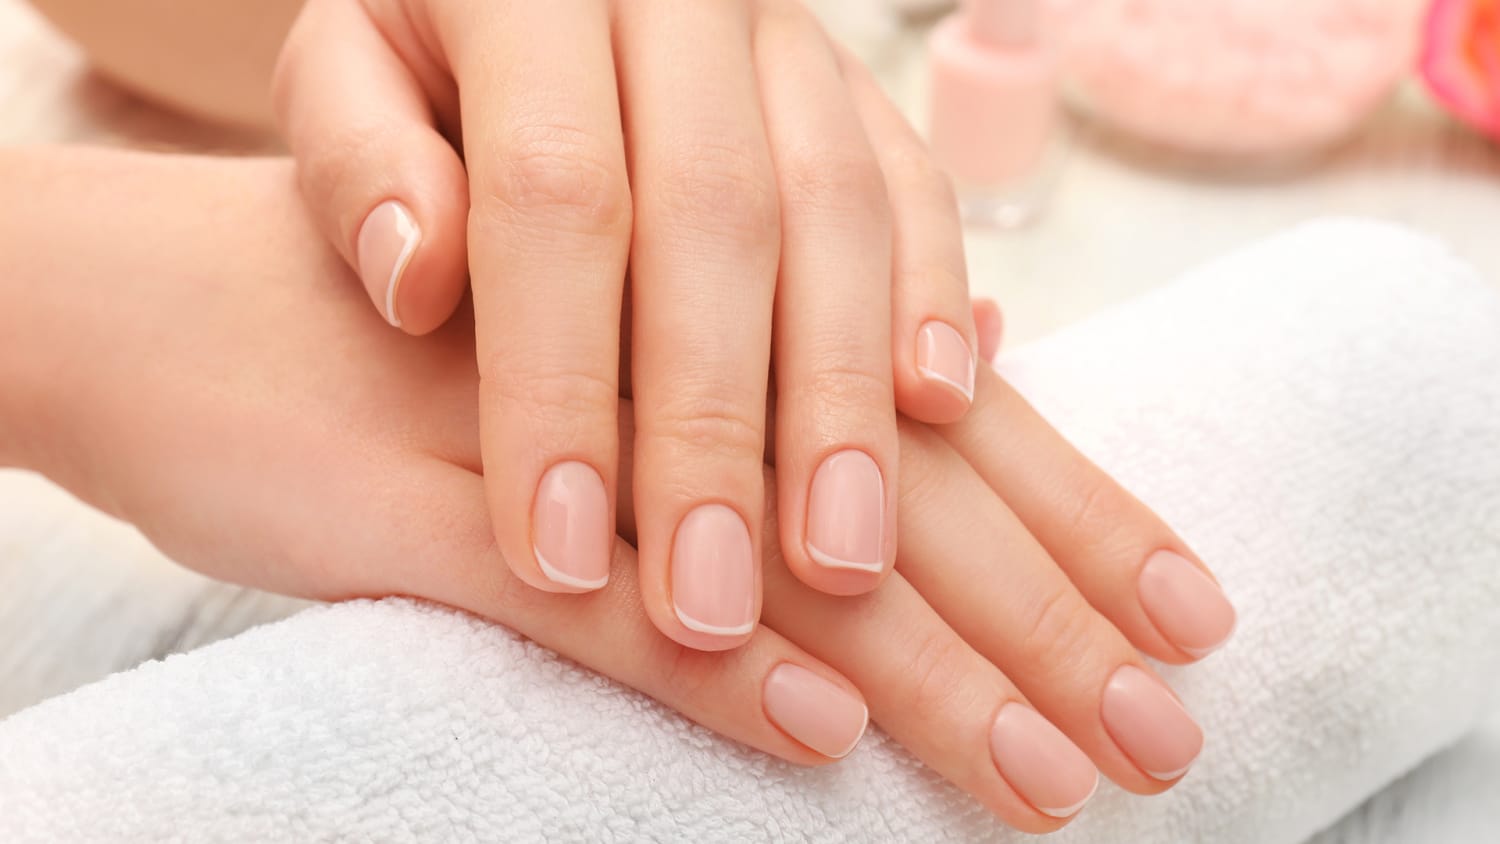 Are Gel Manicures Safe? UV Exposure, Skin Cancer Risk To Consider